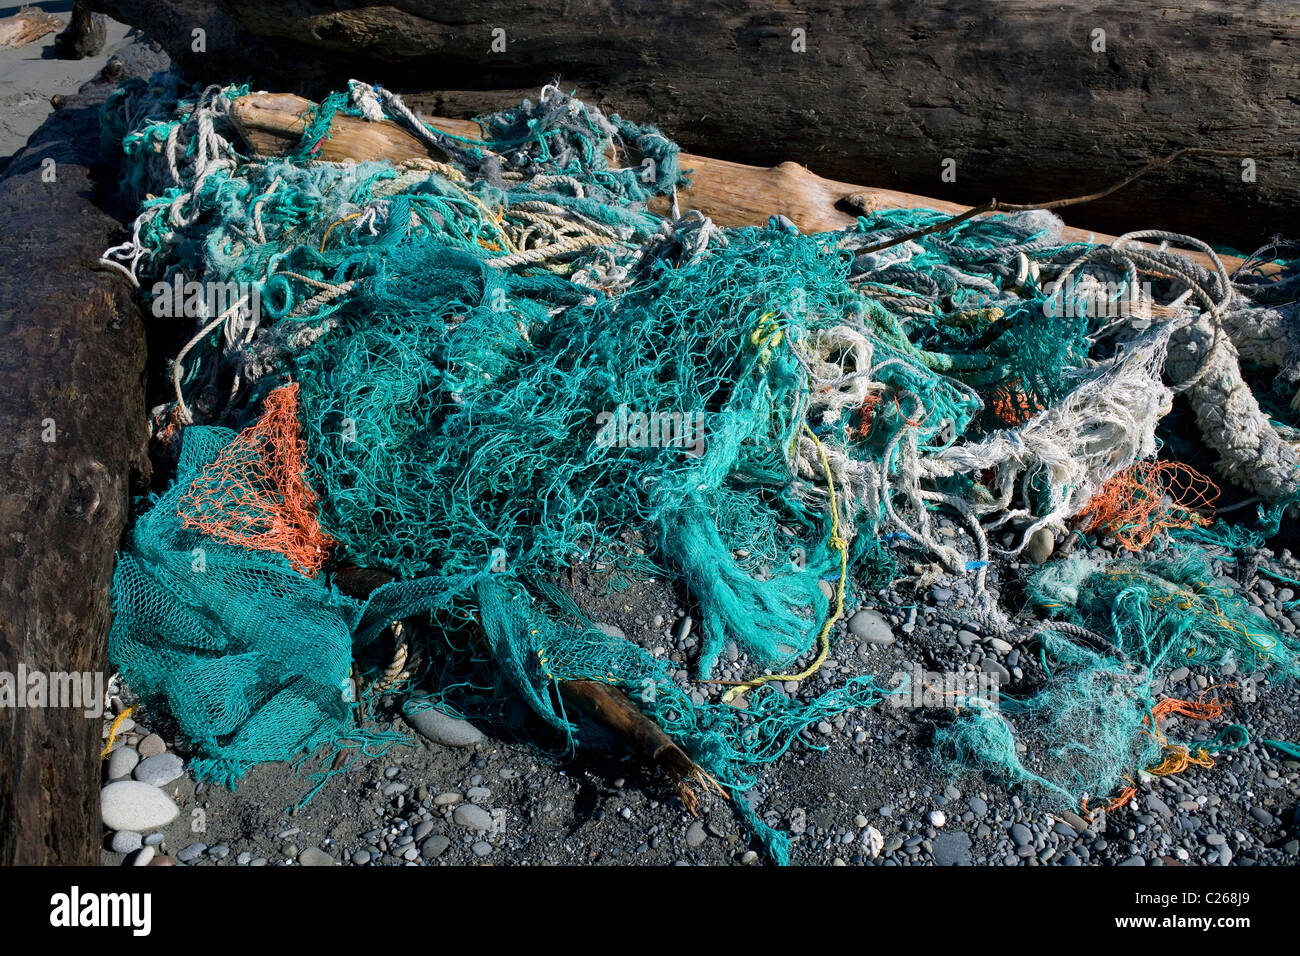 Laver les filets de pêche de l'océan pacifique plage kalaloch washington usa Banque D'Images